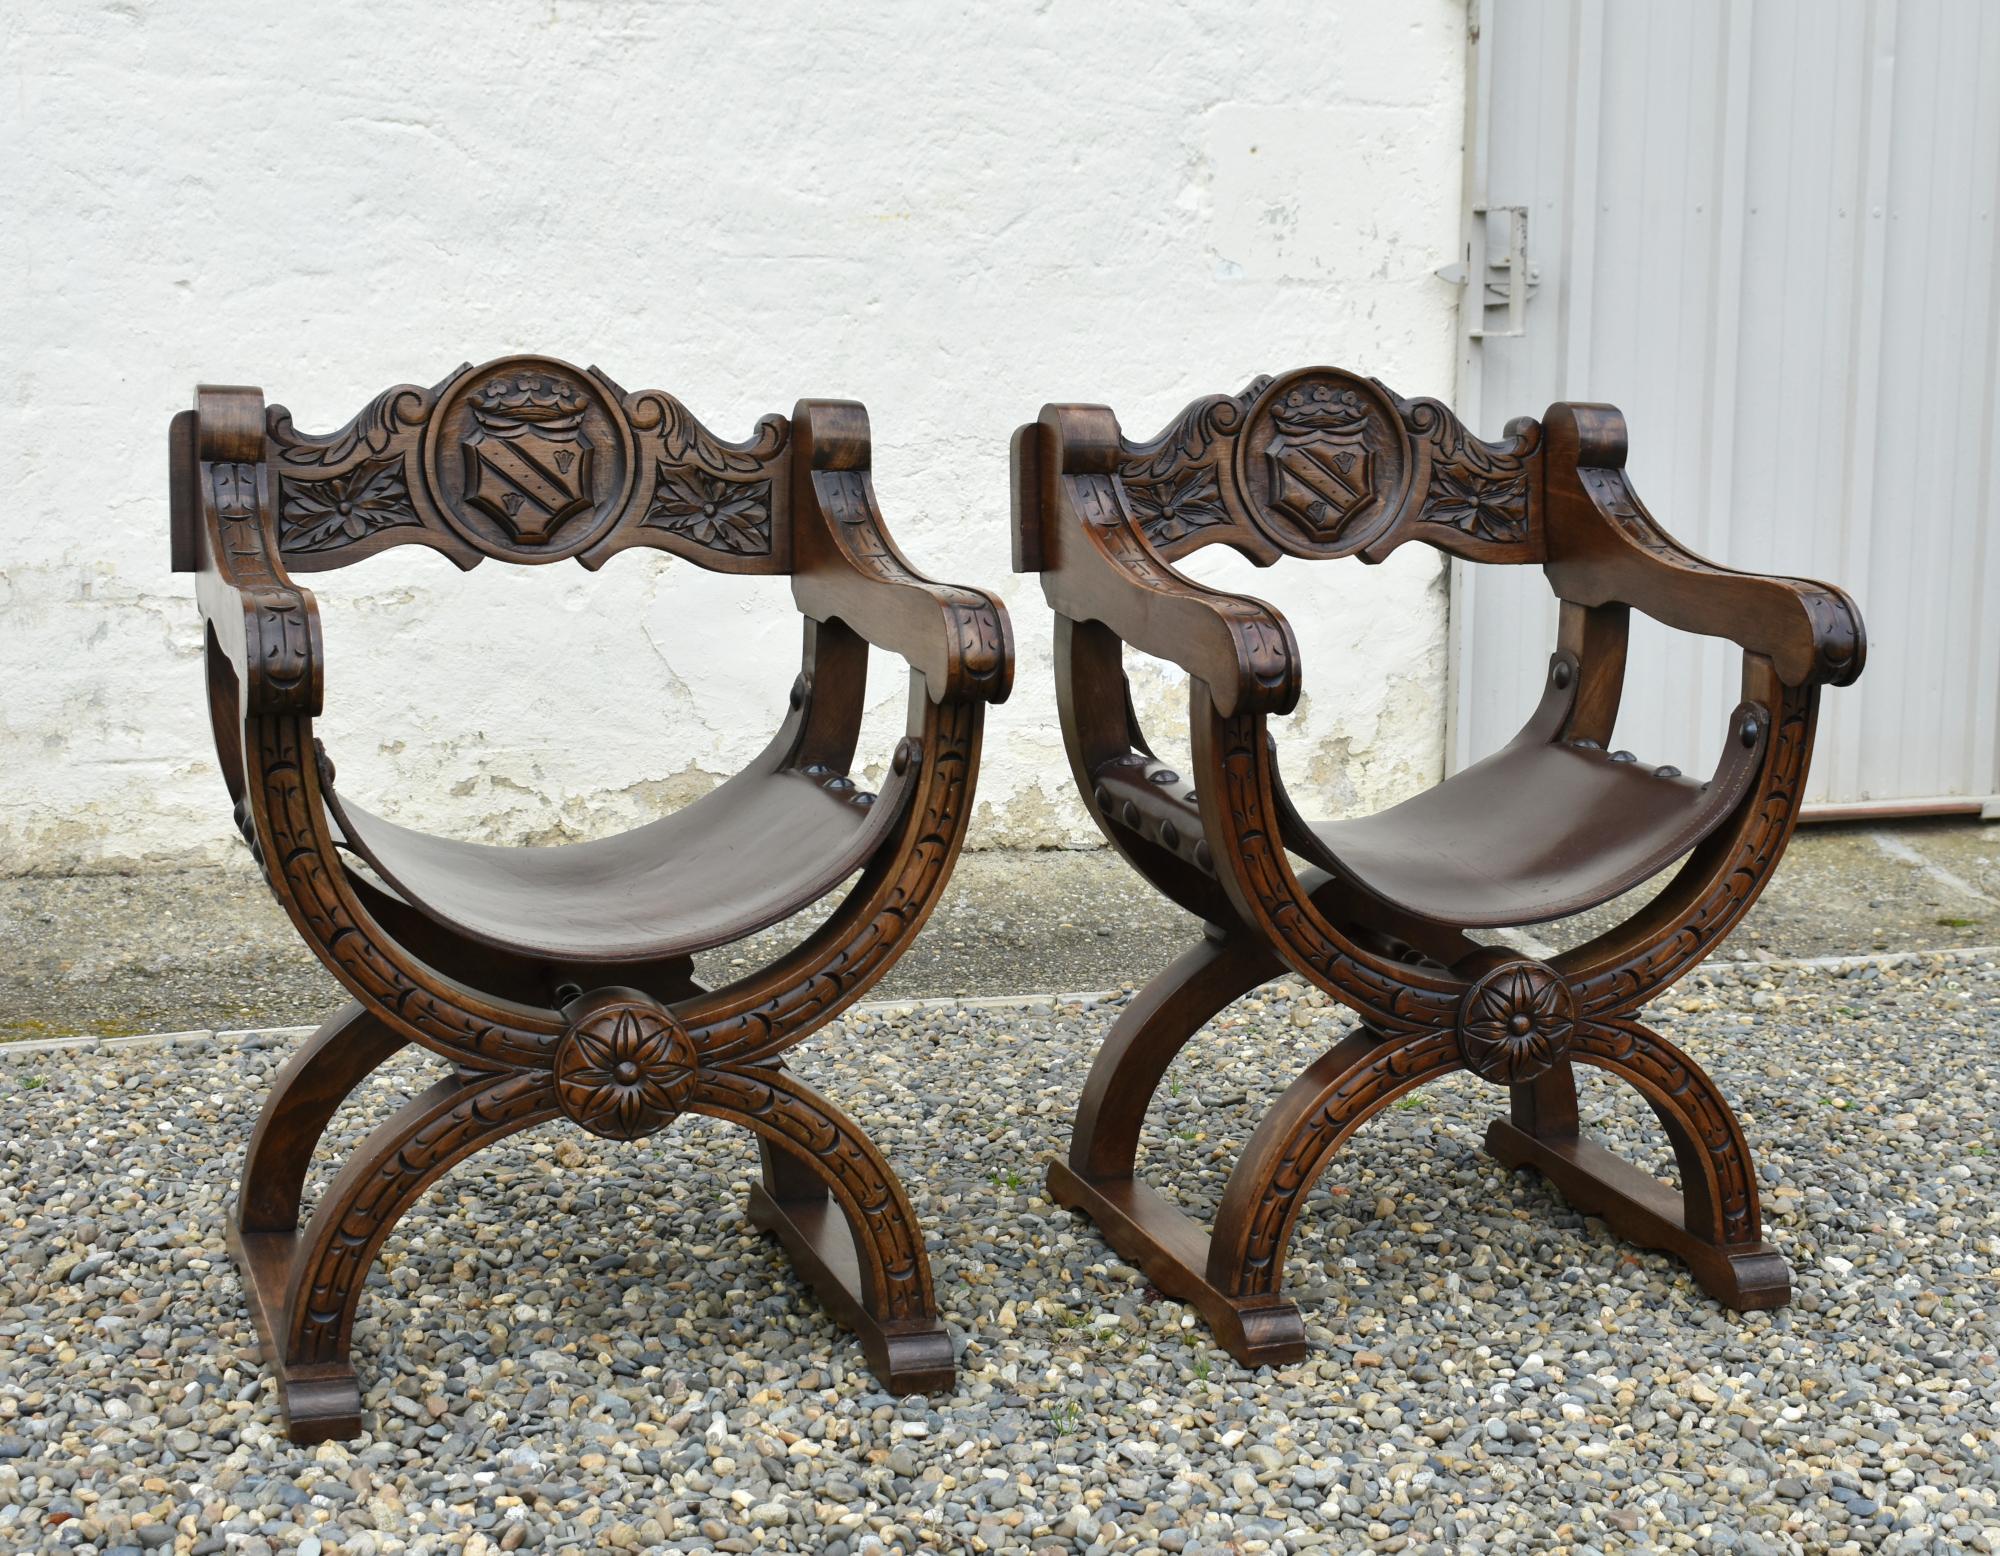 Paire de chaises en chêne de style Dagobert par Navarro Argudo
 
Paire de chaises assorties en X Frame / Throne Chairs de Navarro Argudo, Espagne.
 
Les chaises sont en chêne massif et recouvertes d'un cuir de selle très épais, renforcé à l'avant et